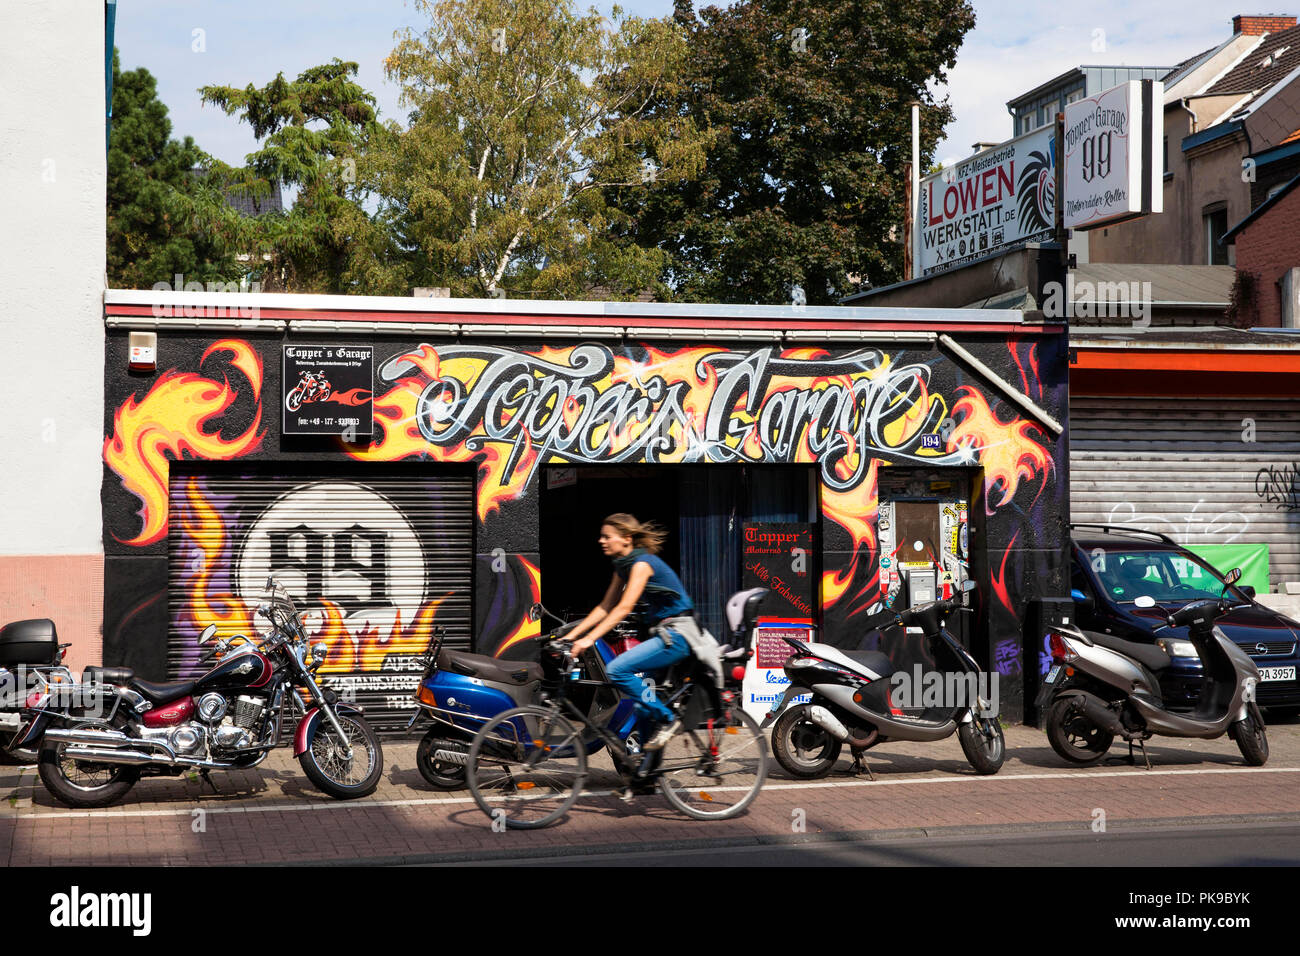 Motorrad's Garage Topper Garage auf die Subbelrather Straße im Stadtteil  Ehrenfeld, Köln, Deutschland. Motorrad Werkstatt Topper's Garage an der S  Stockfotografie - Alamy